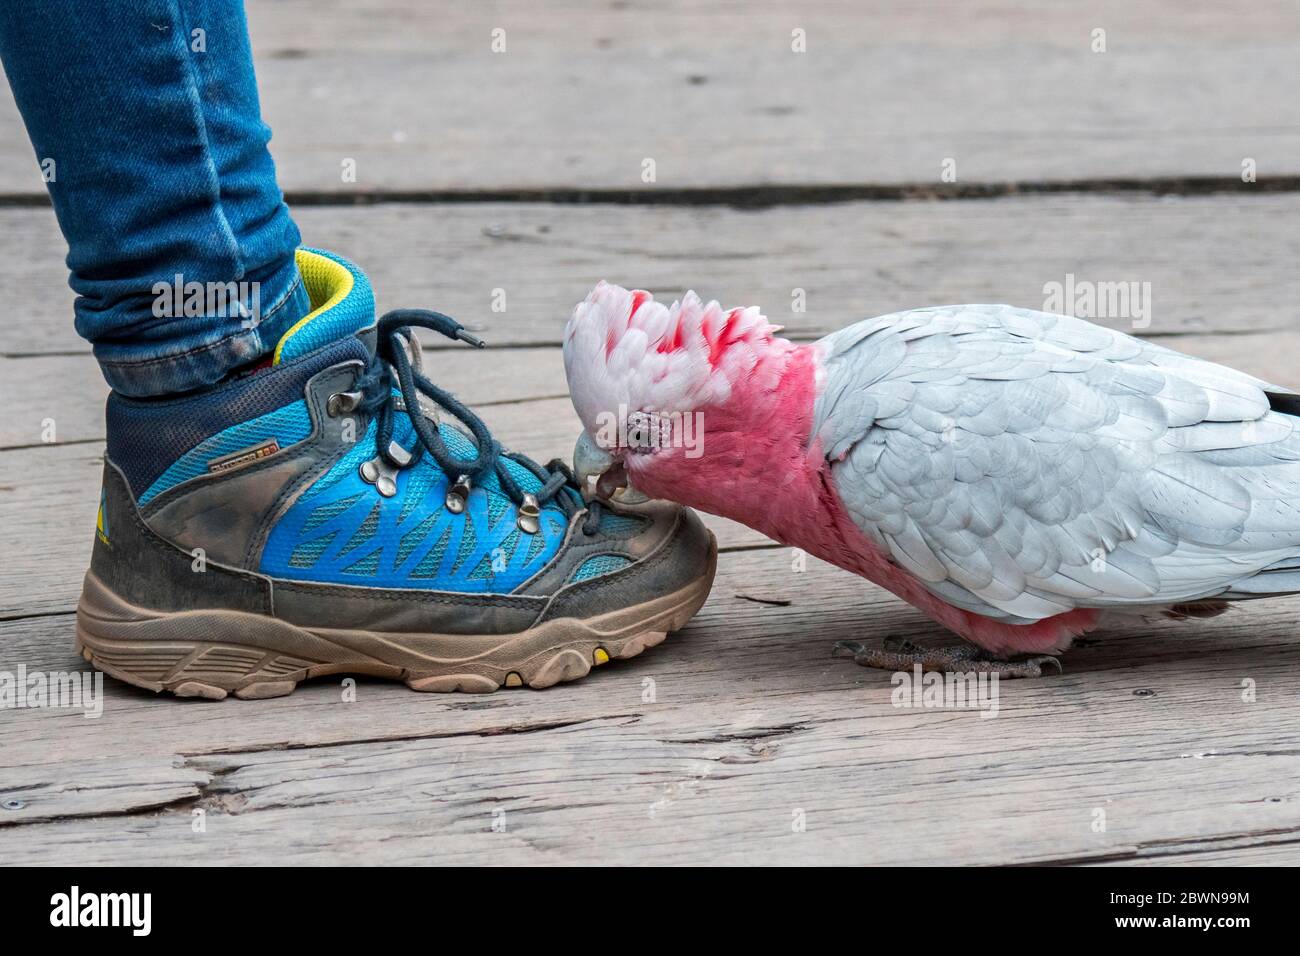 Curieuse galah / cocatoo rose et gris (Eolophus roseicapilla), originaire d'Australie, paqueuse à des lacets de chaussures / cordes de chaussures de la chaussure colorée du touriste Banque D'Images